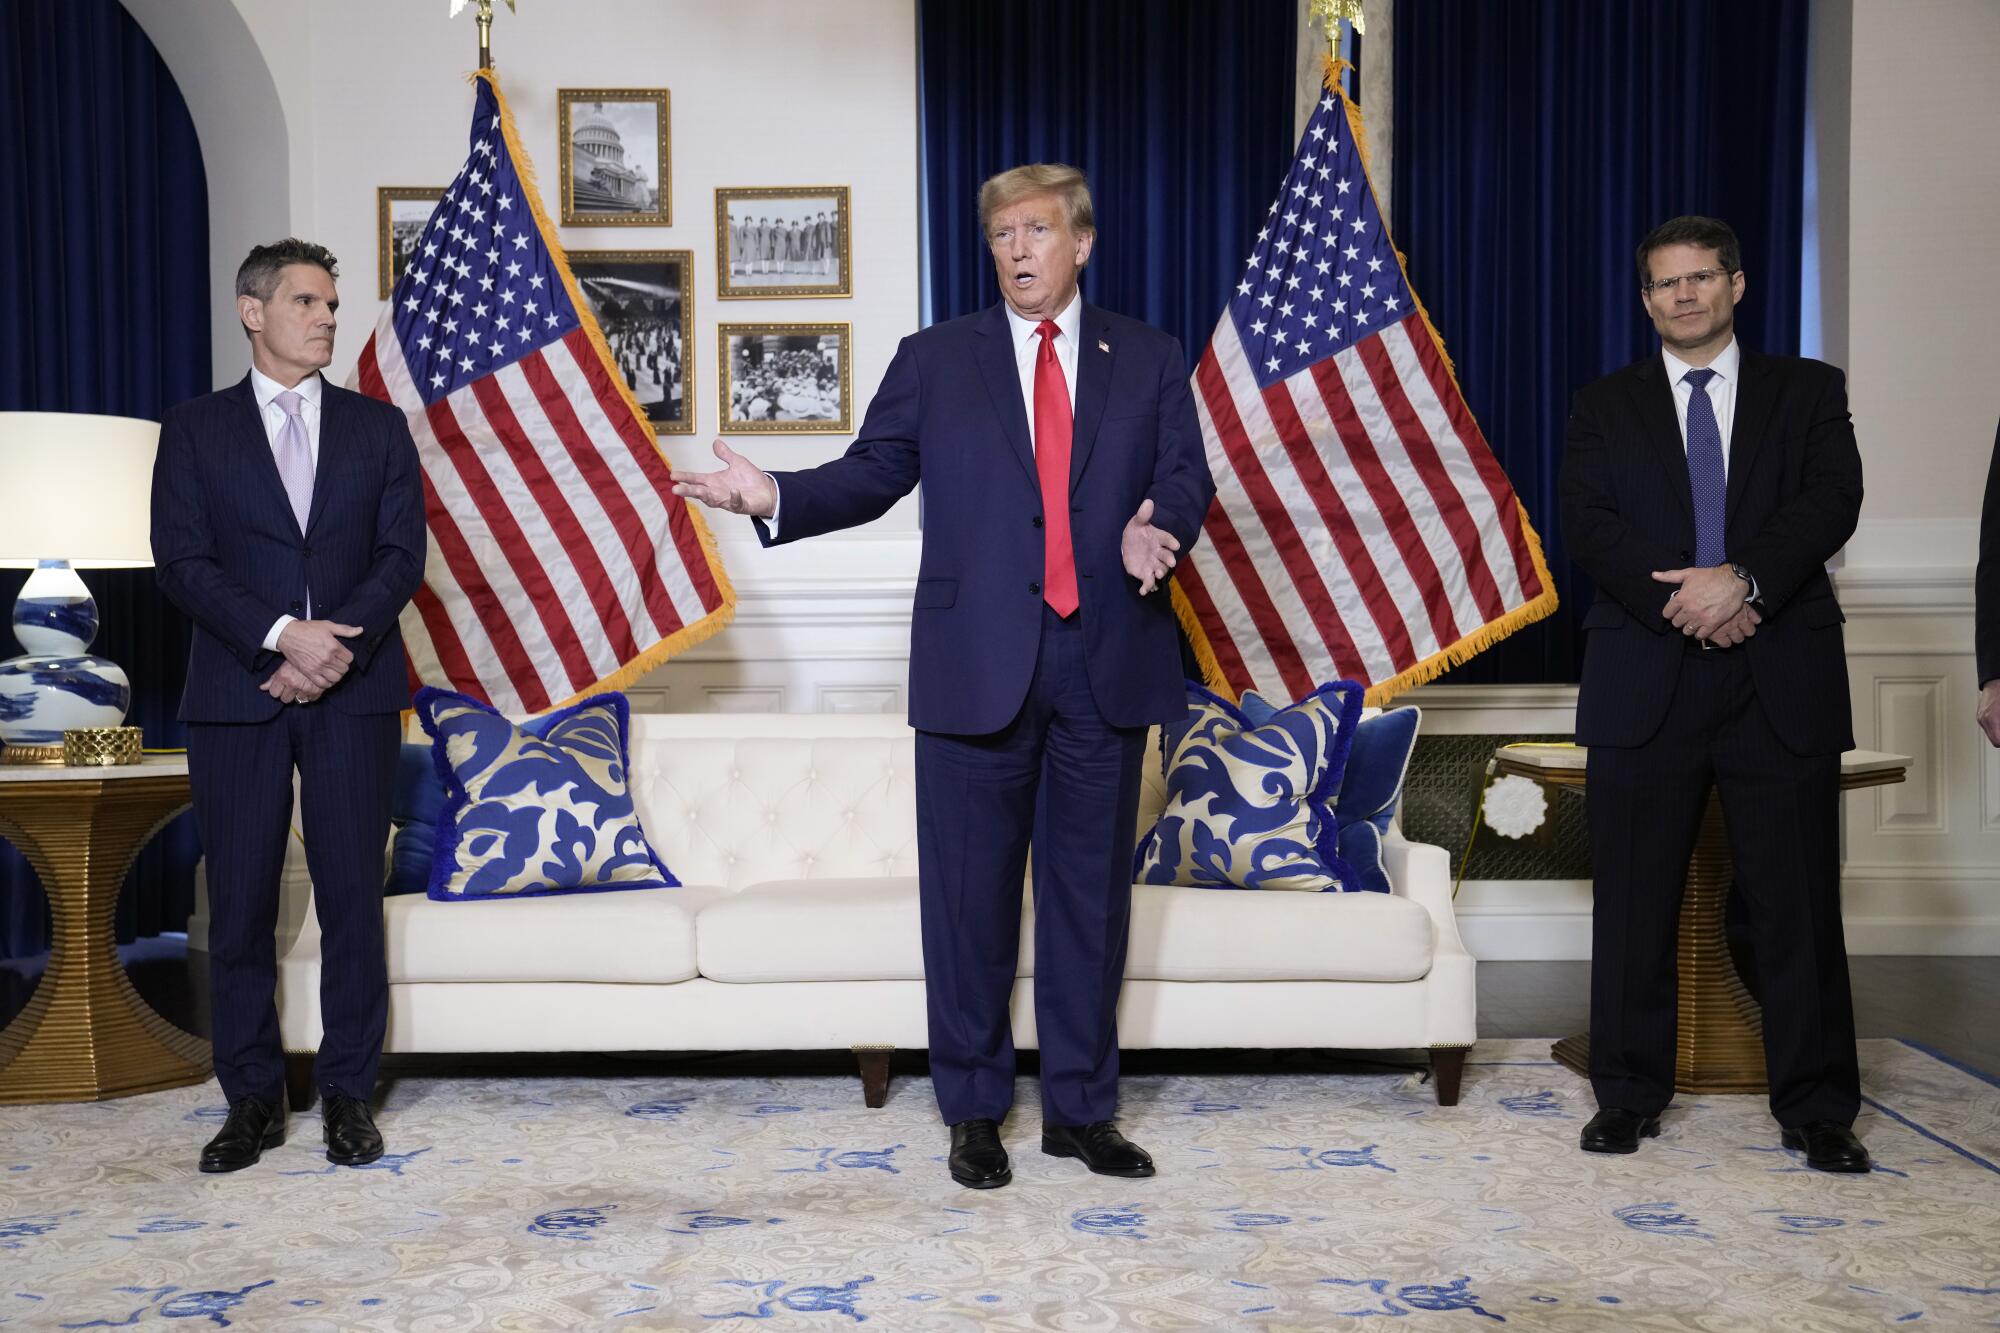 前总统特朗普站在一间白色、蓝色装饰和两面美国国旗的房间里，身旁是两名西装革履的男子